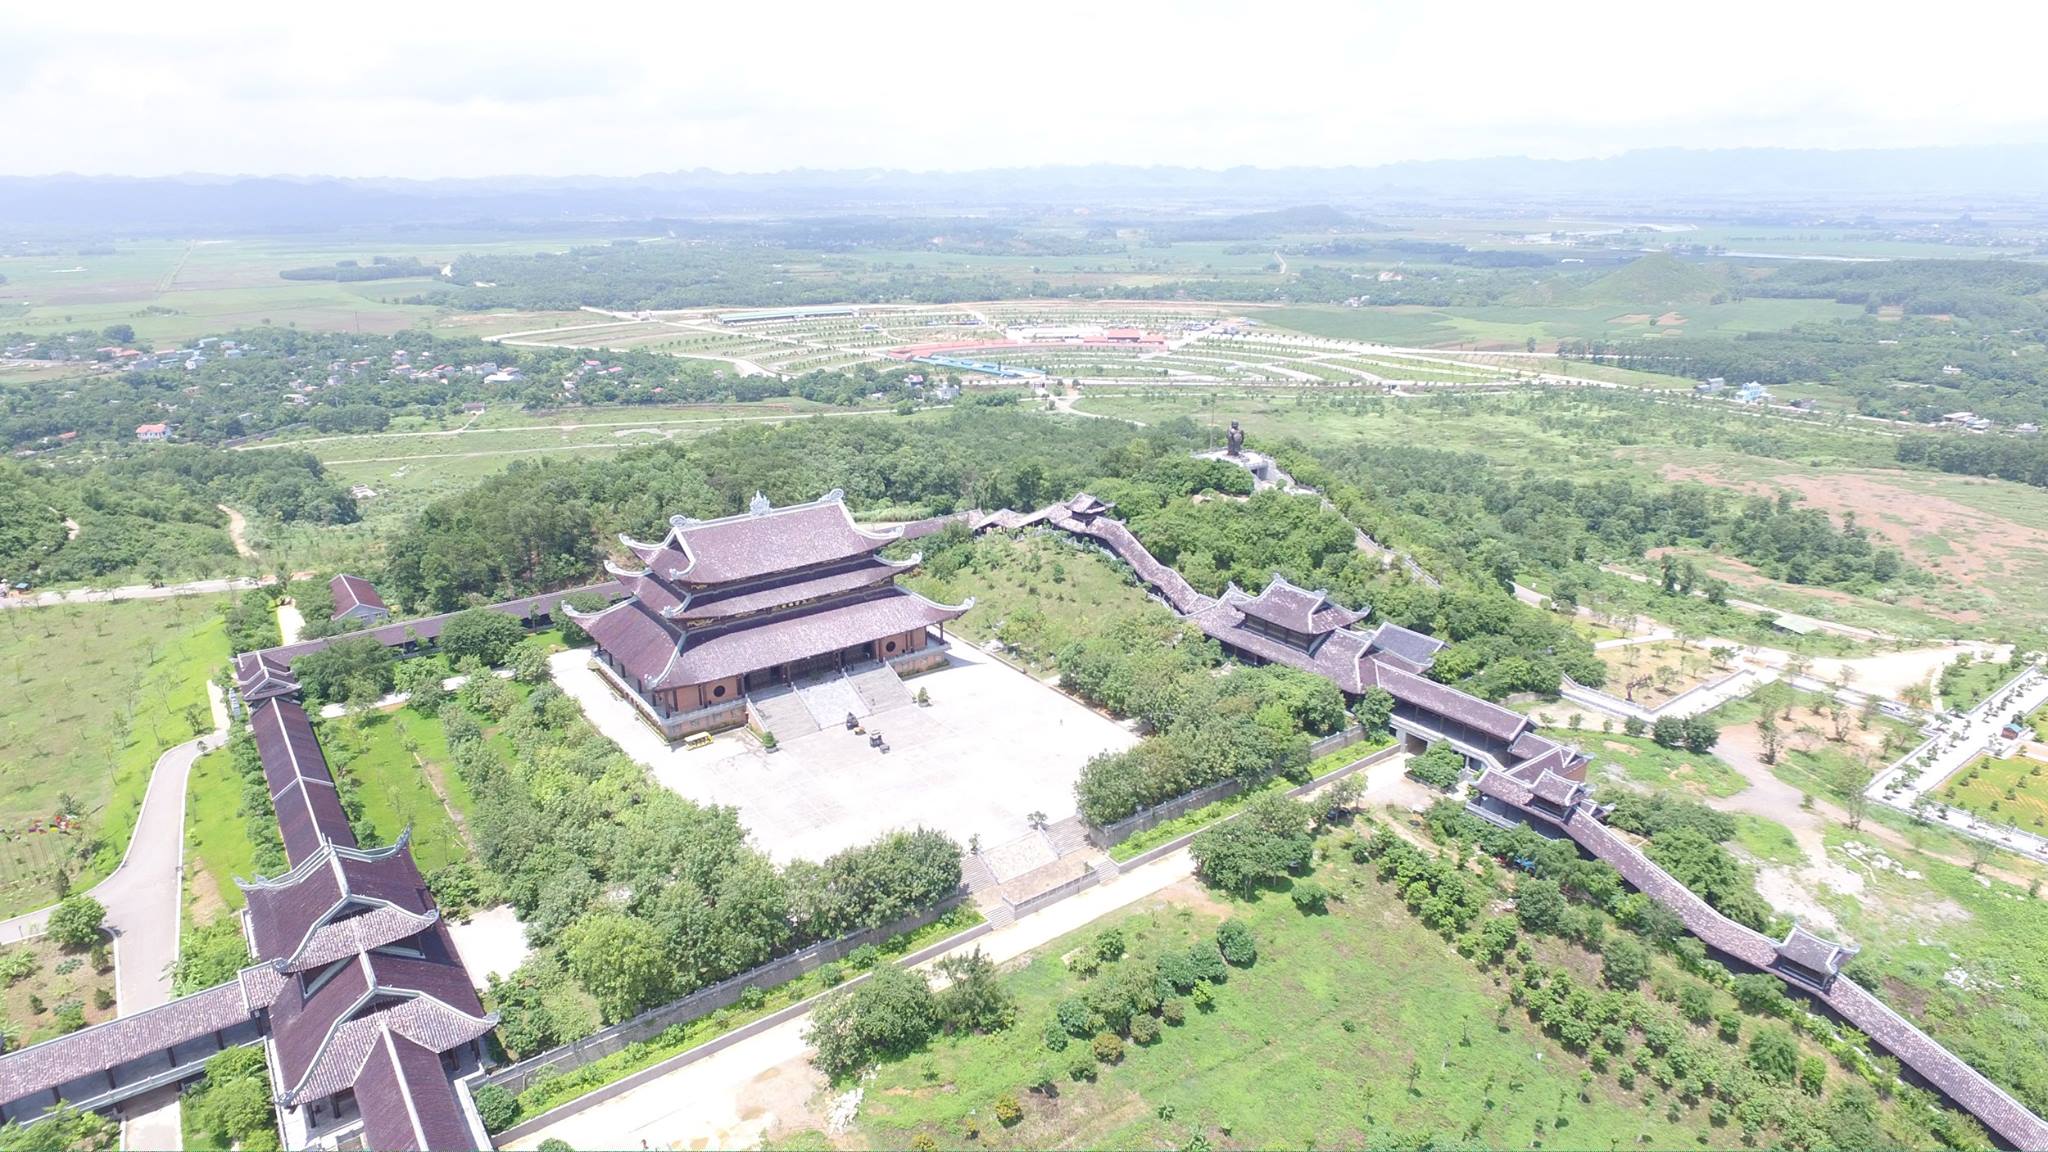 Quần thể khu chùa hiện có diện tích 539 ha, bao gồm 27 ha khu chùa cổ, 80 ha khu chùa mới